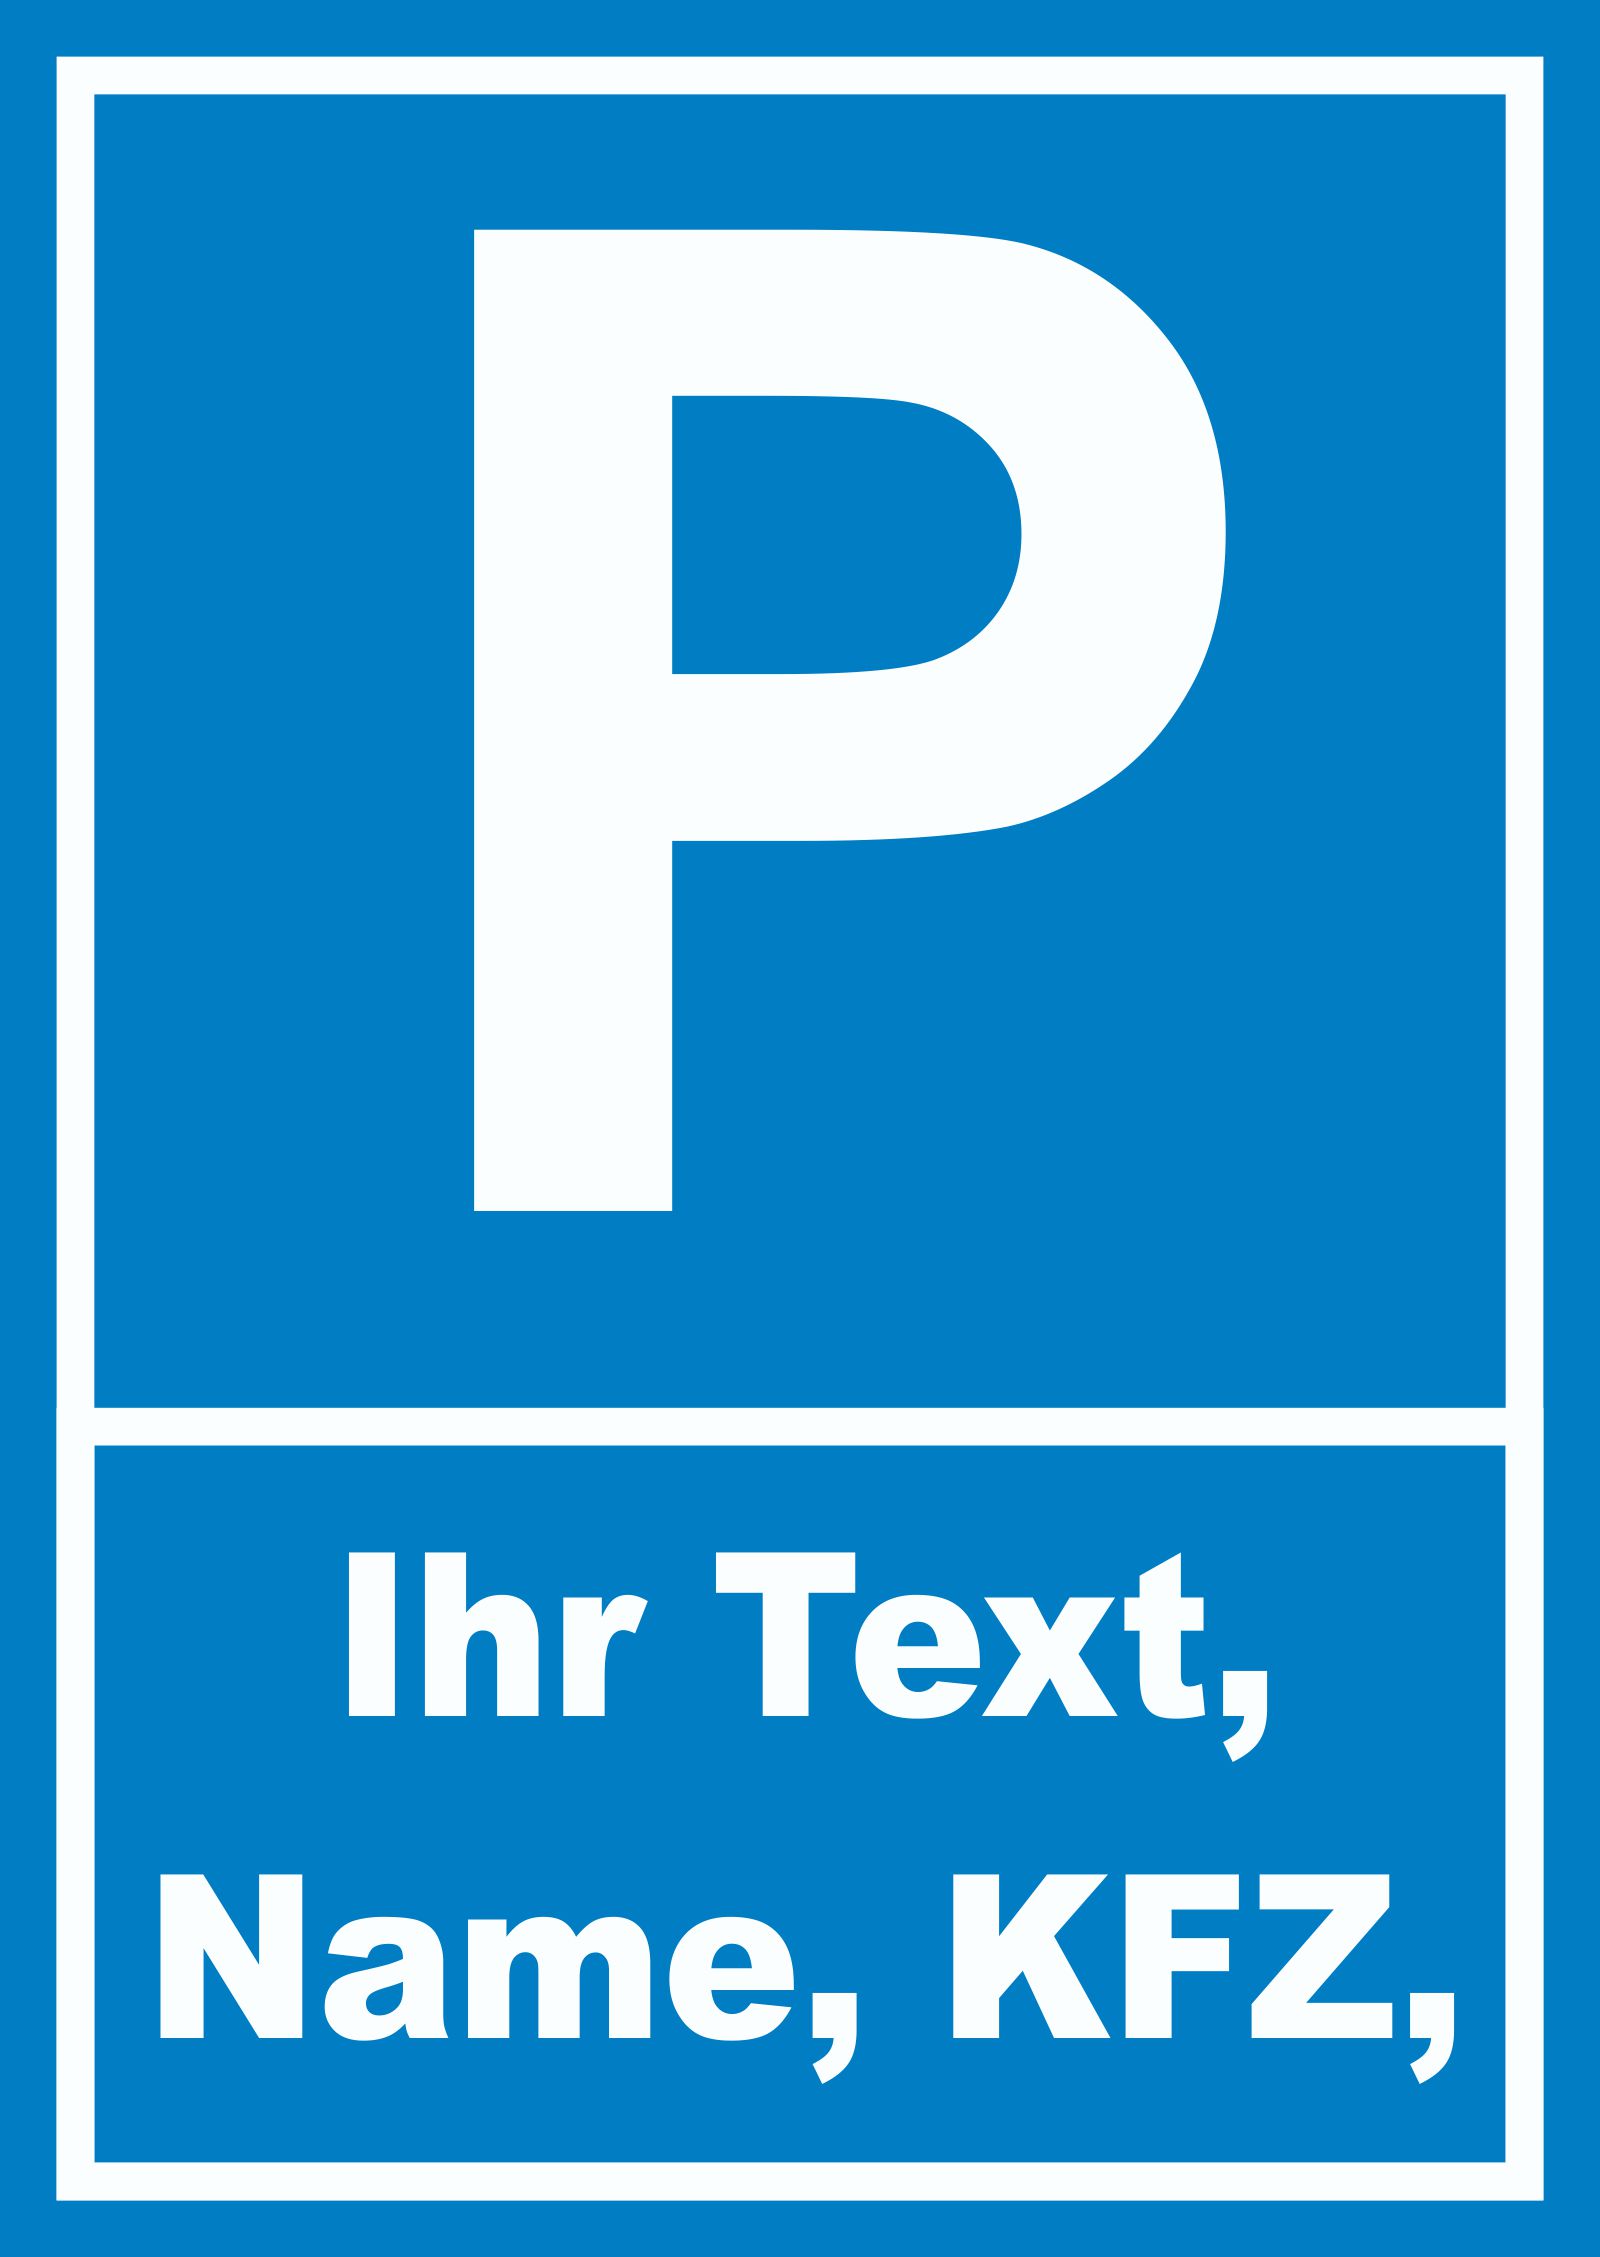 Parkplatzschild einzeilig mit Wunschtext beschriftet